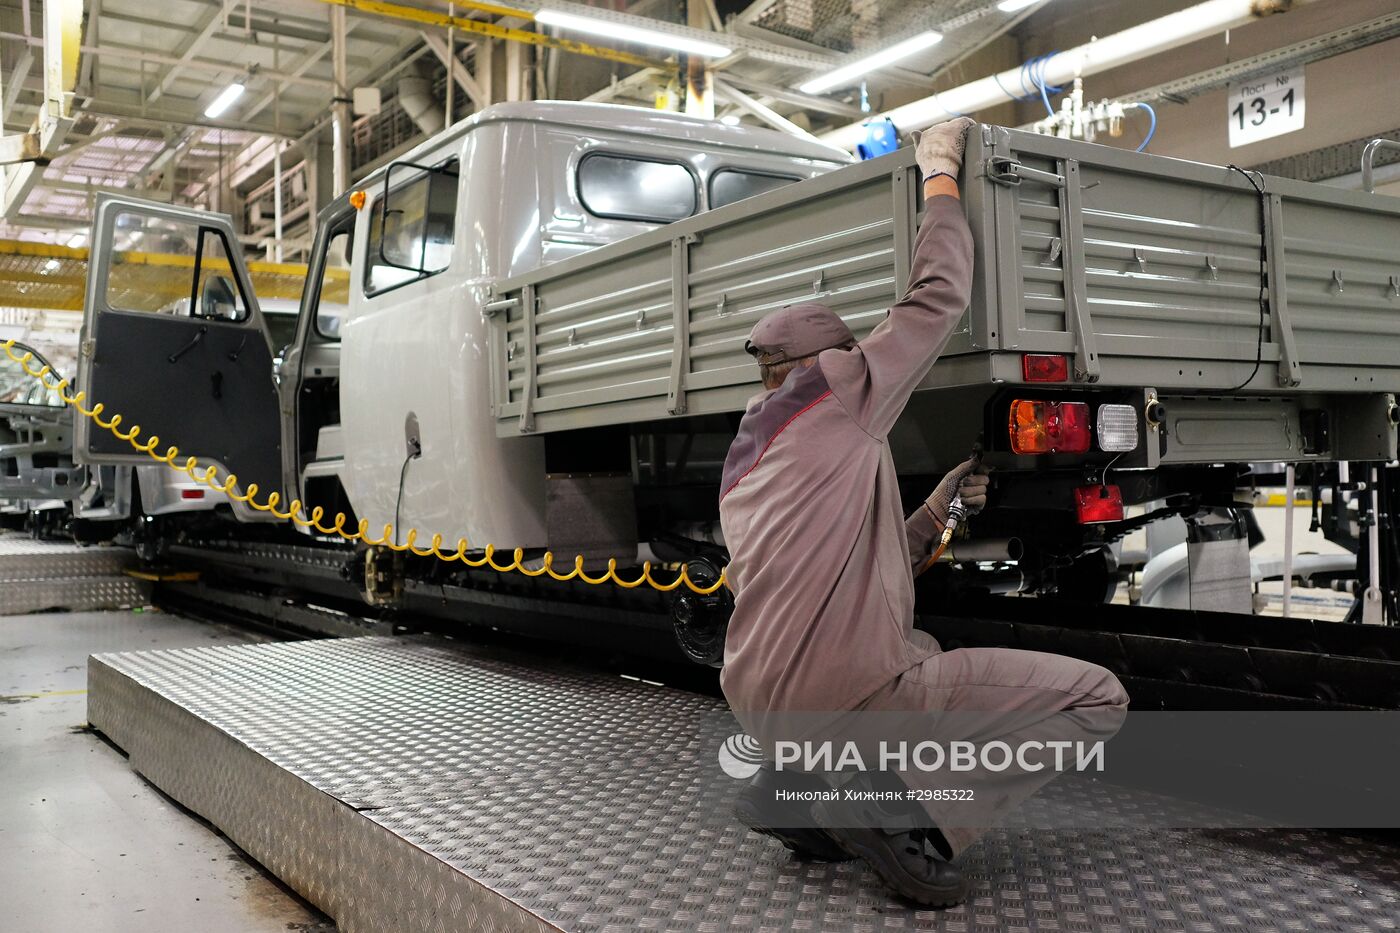 Ульяновский автомобильный завод